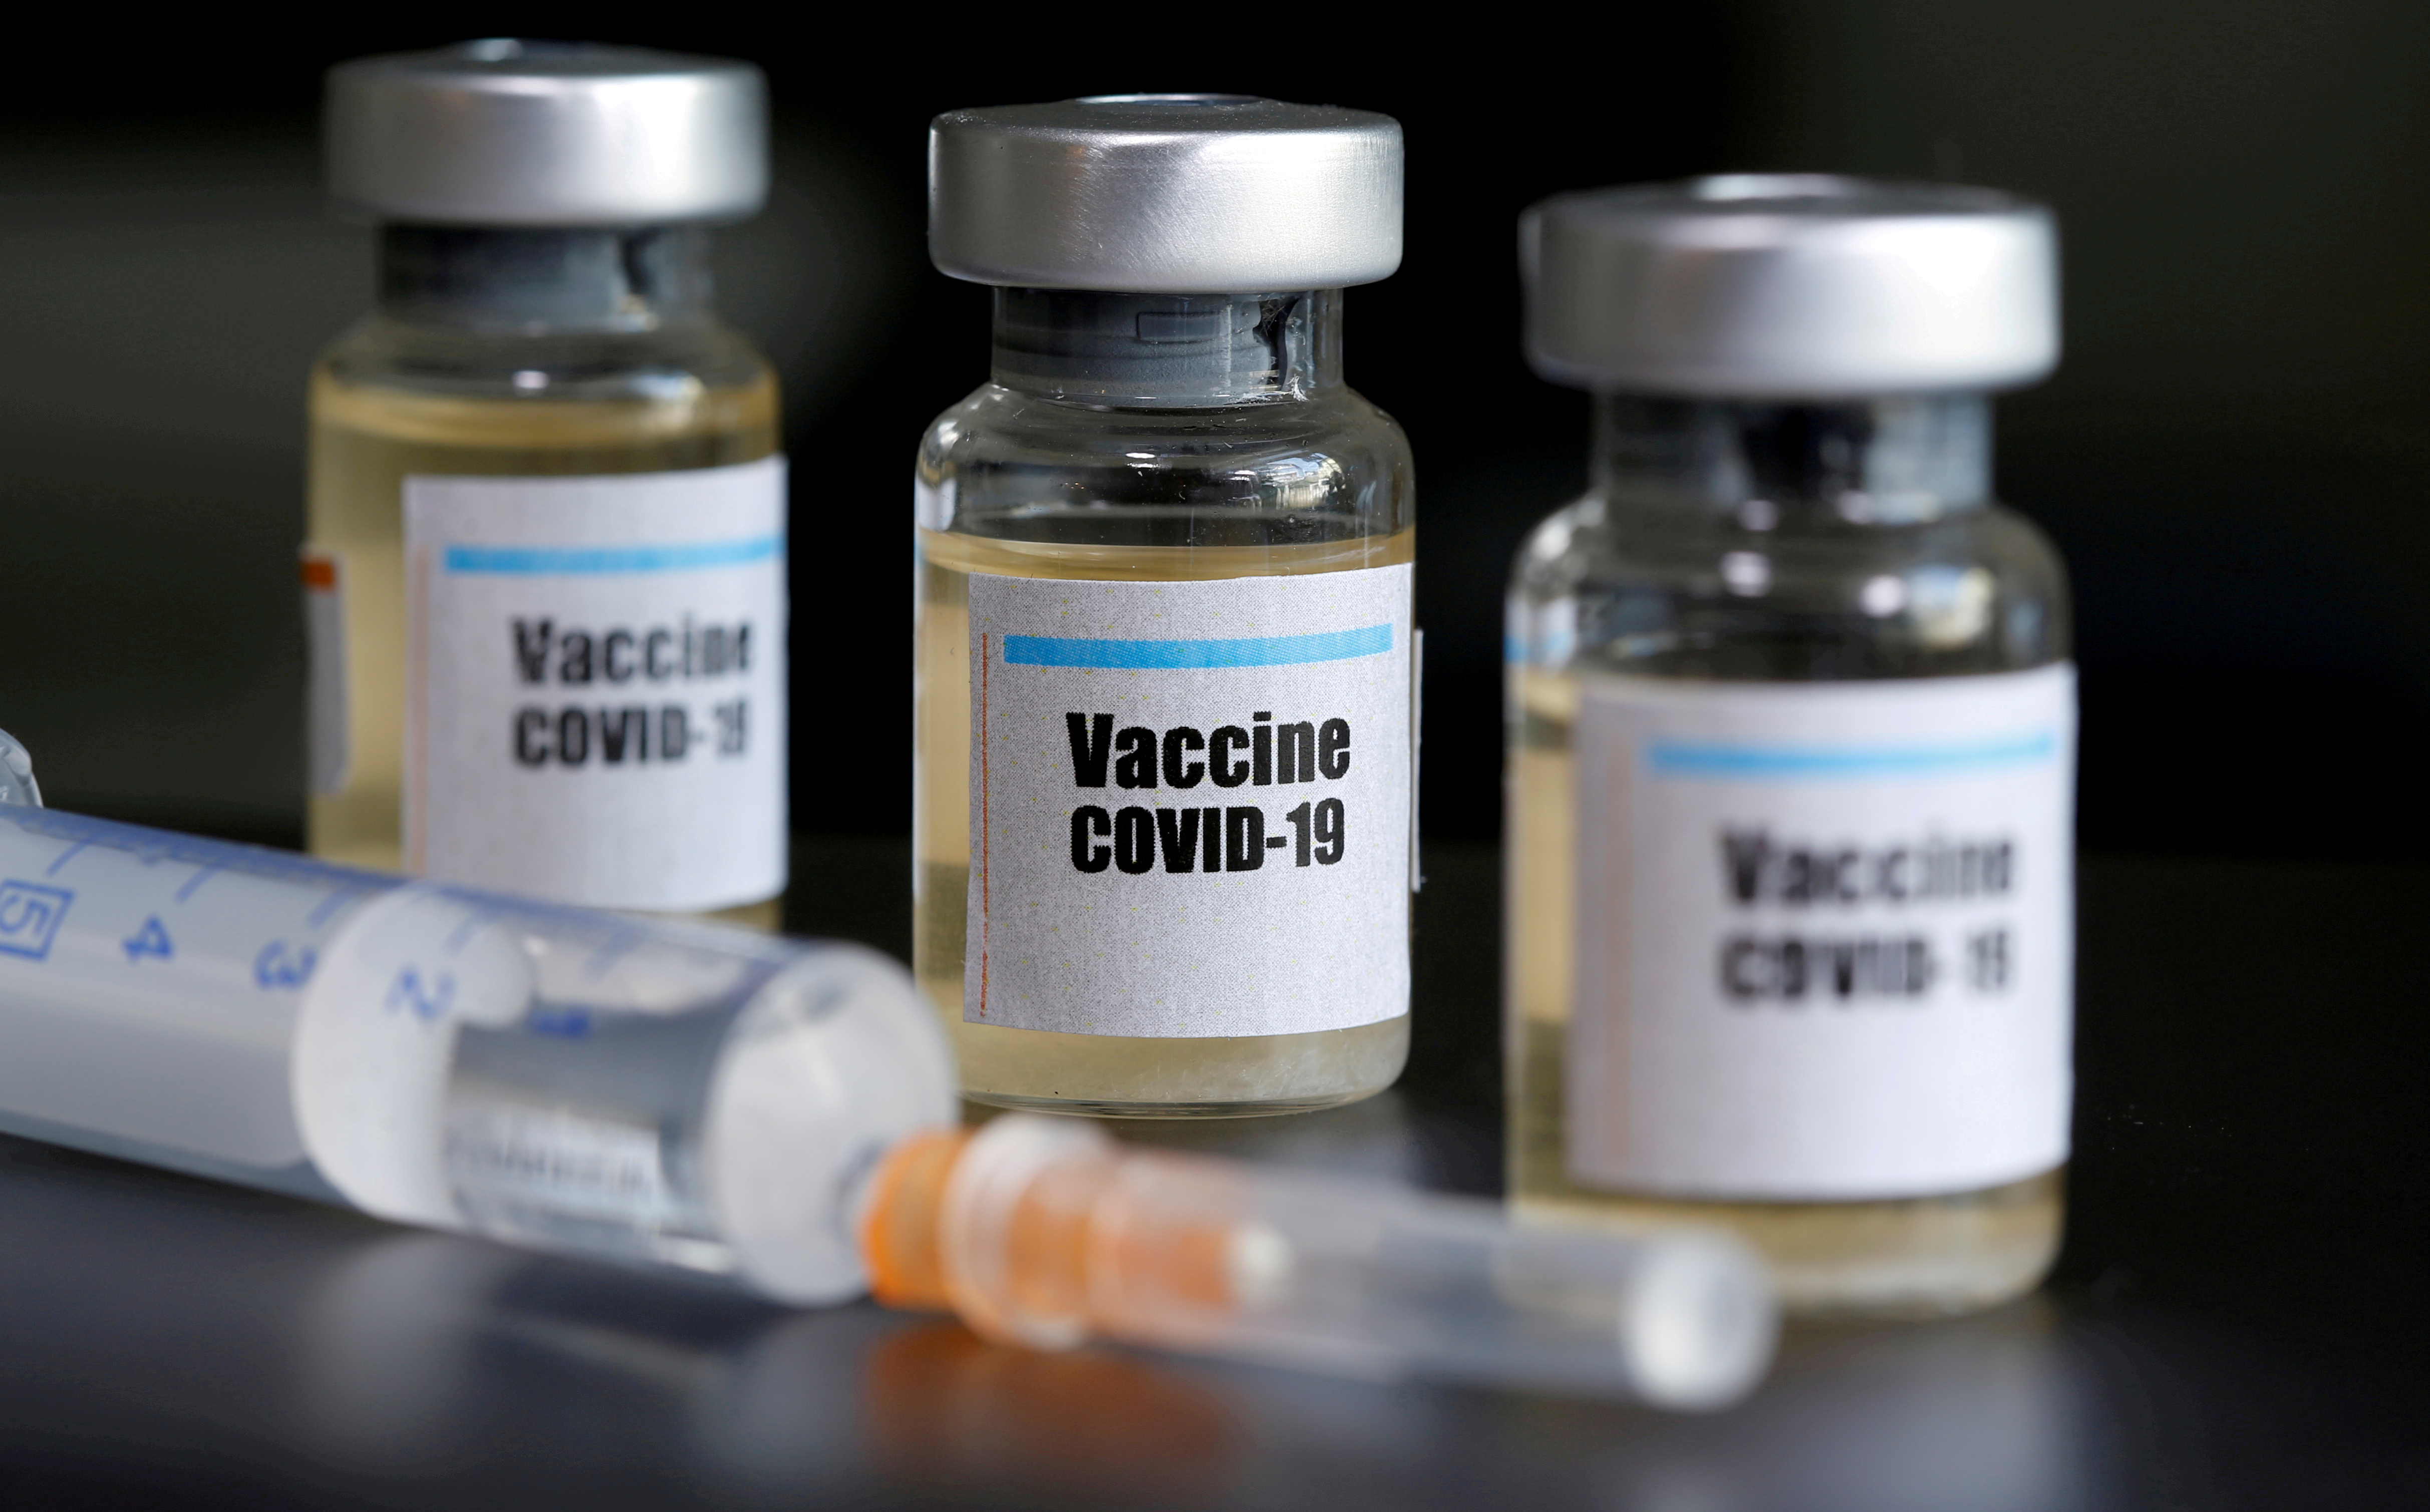 Agora temos 2 candidatos eficazes à vacina contra o coronavírus. O que isso realmente significa?